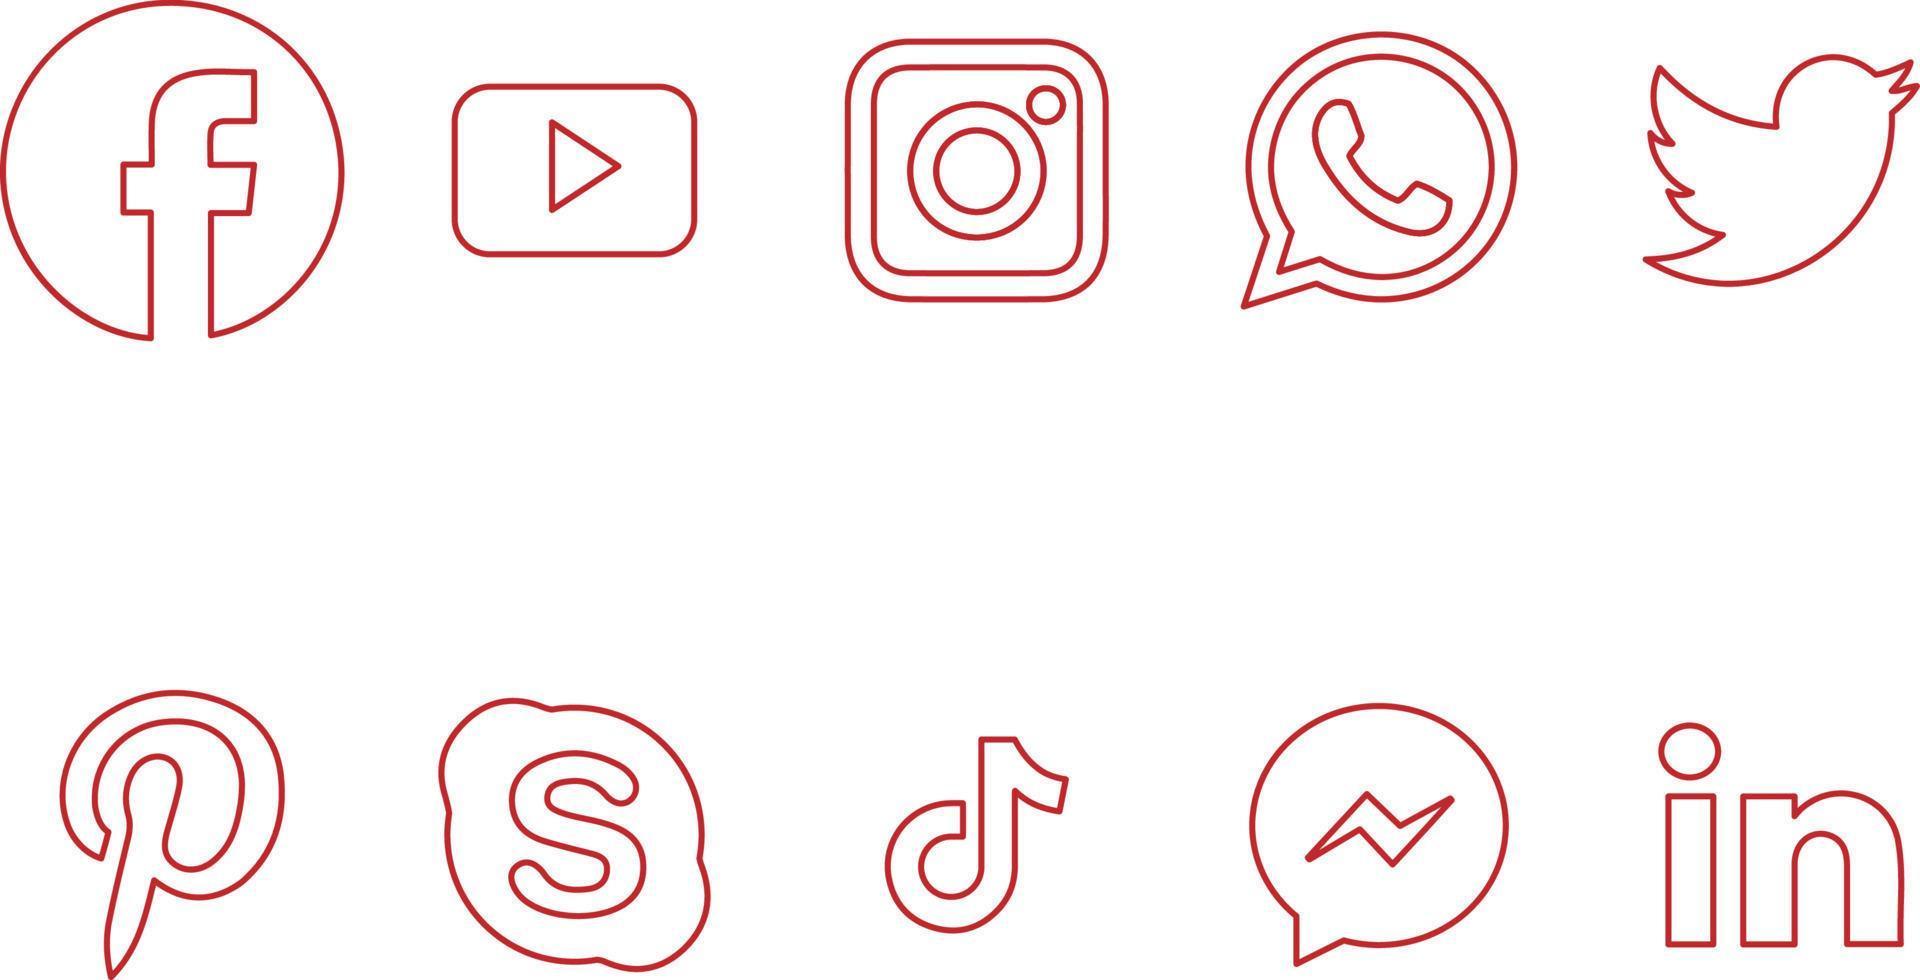 logotipos de mídia social descrevem o estilo de desenho de linha vetor